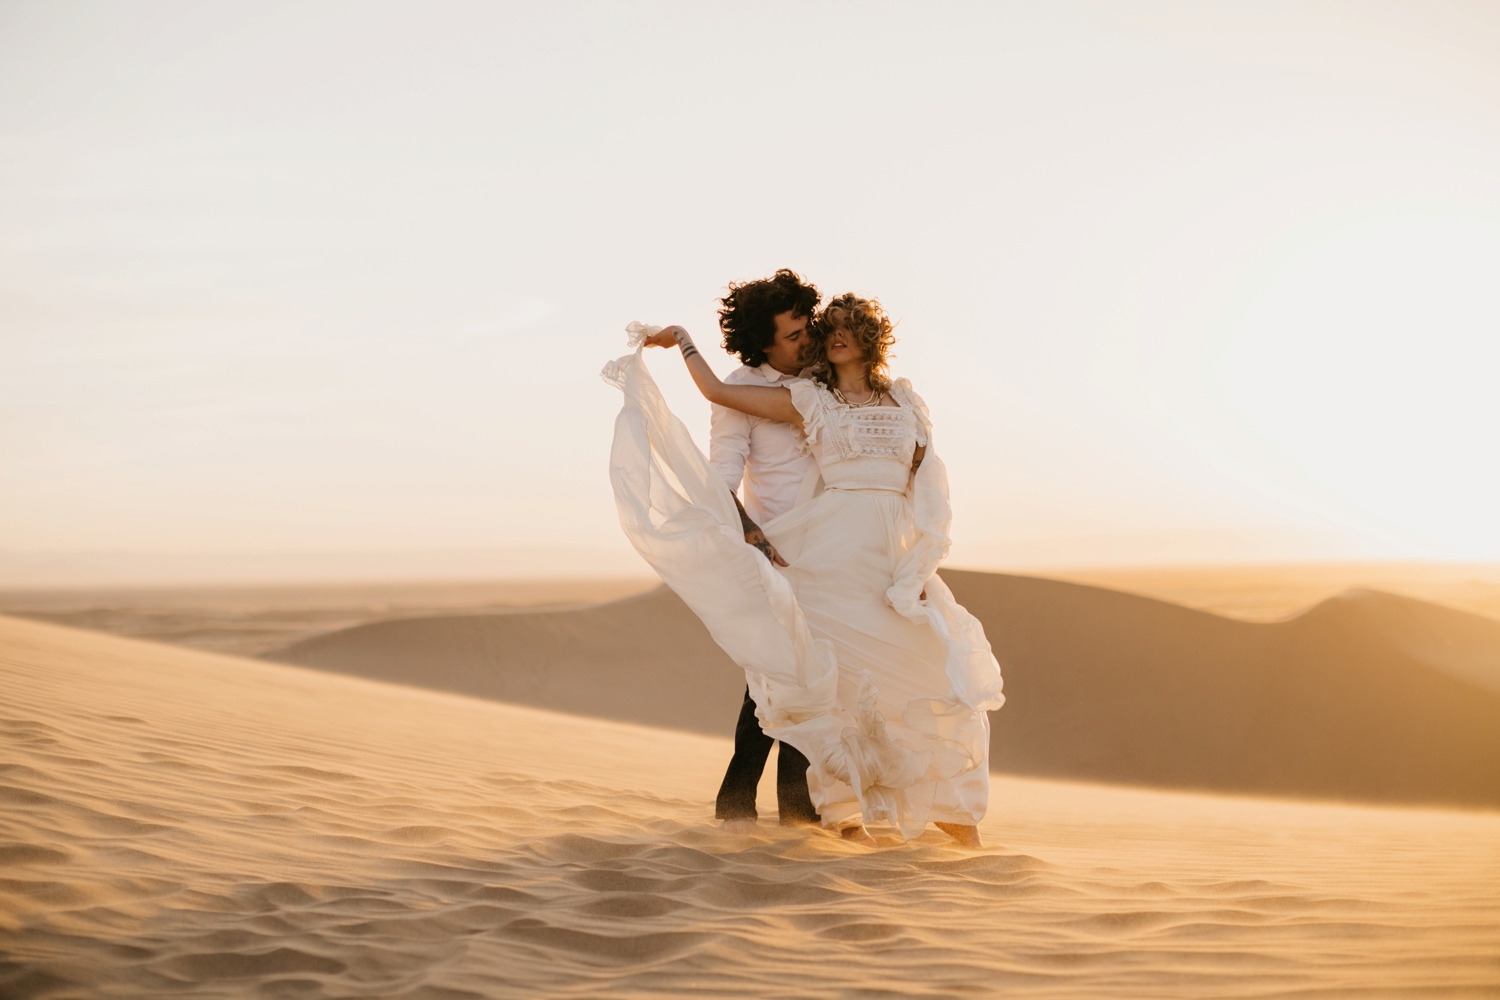 bride groom at sunset in desert 